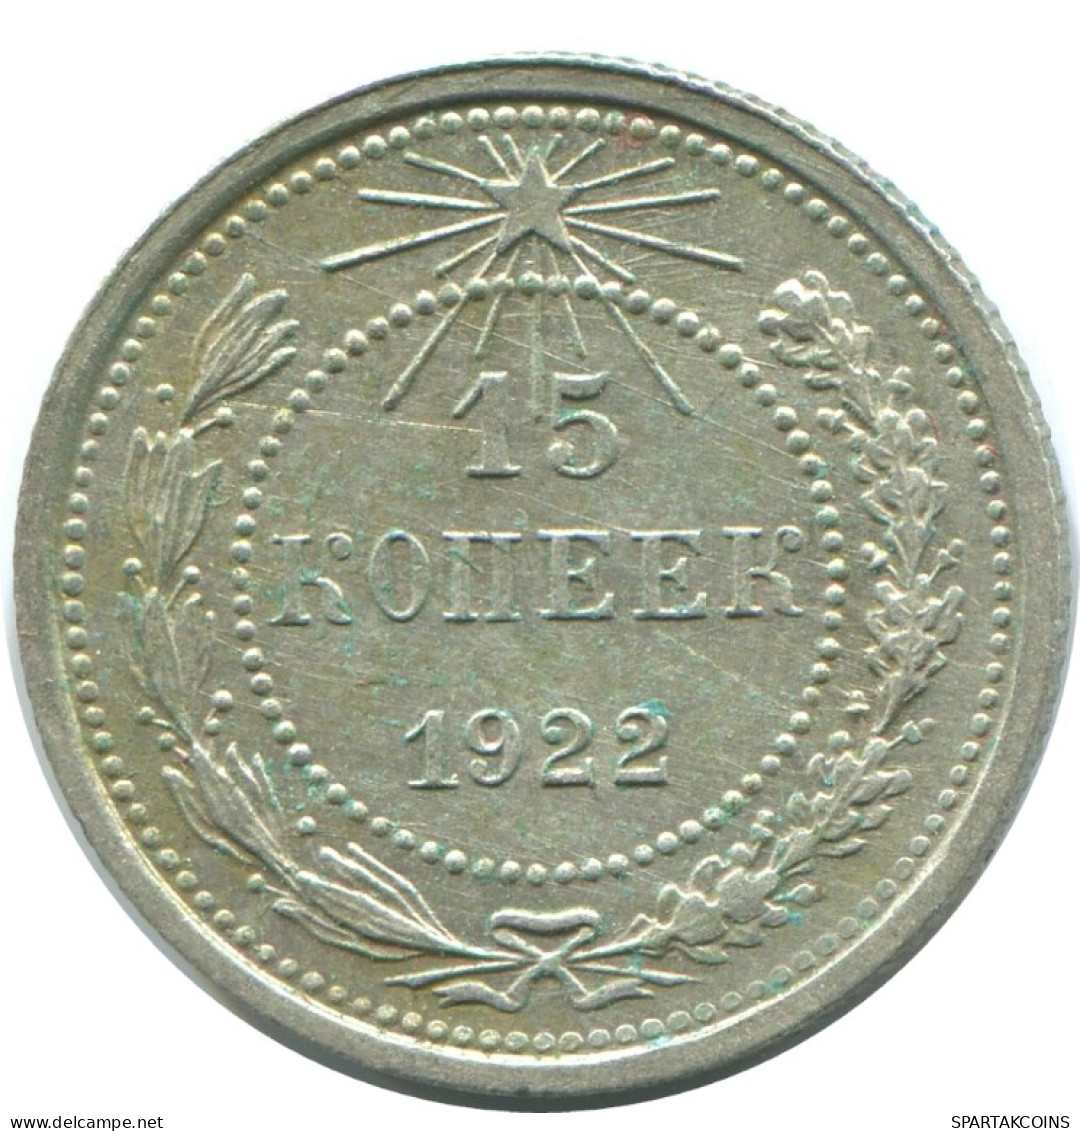 15 KOPEKS 1922 RUSSIA RSFSR SILVER Coin HIGH GRADE #AF250.4.U.A - Russland